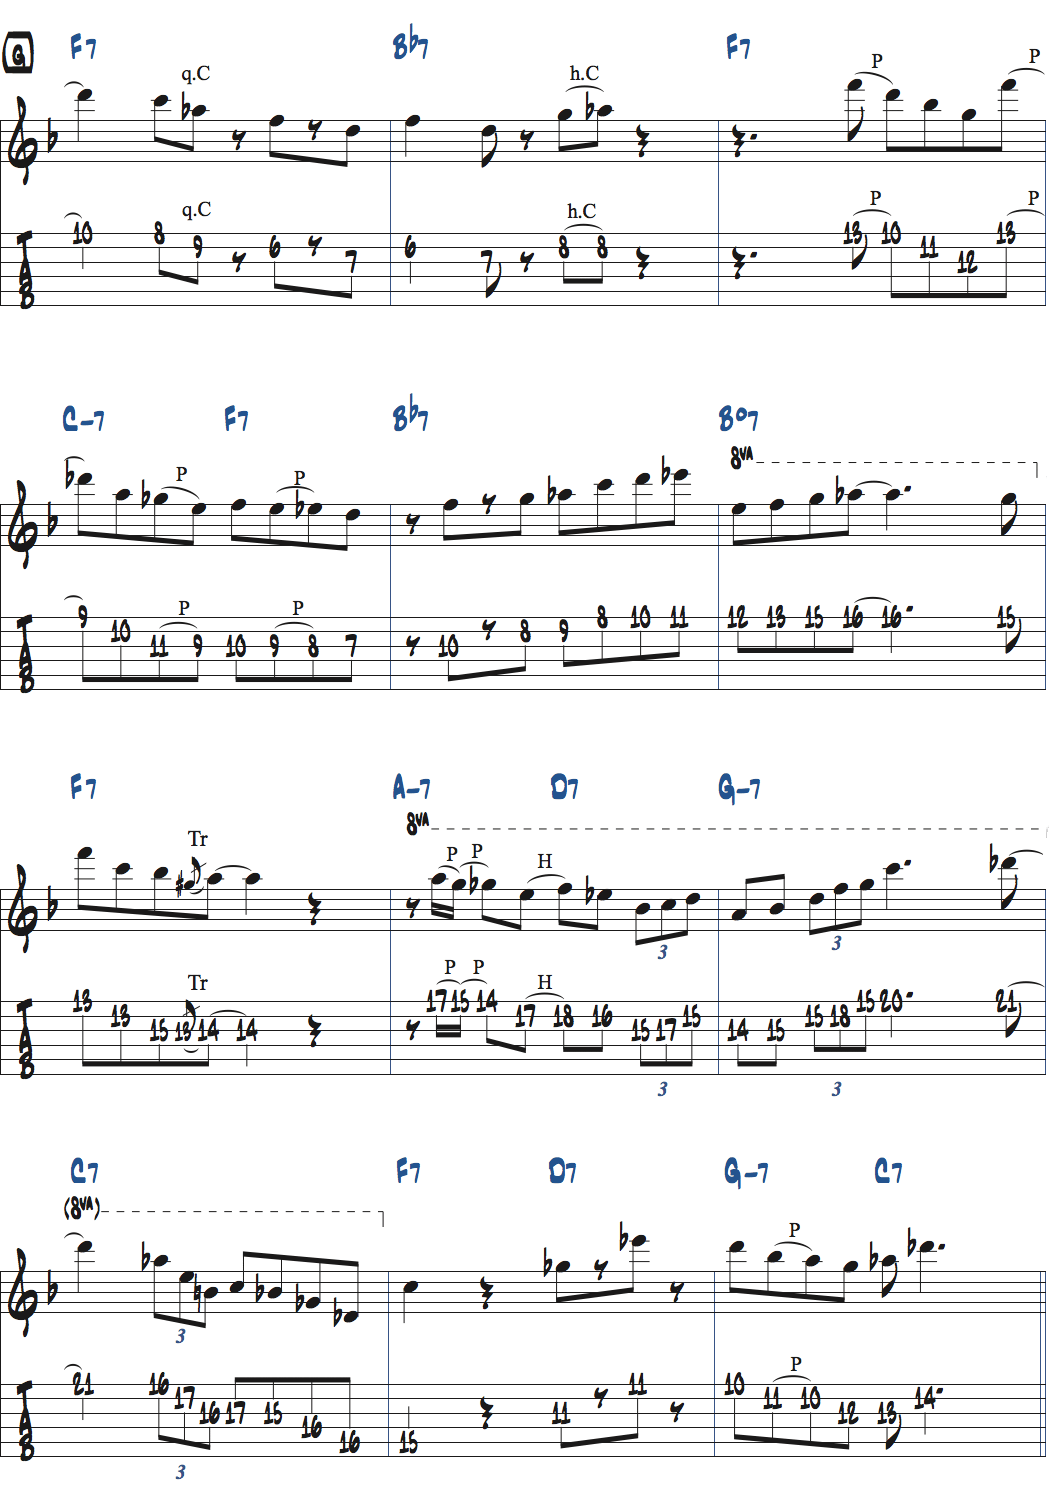 キーFのジャズブルースでのアドリブ楽譜ページ7